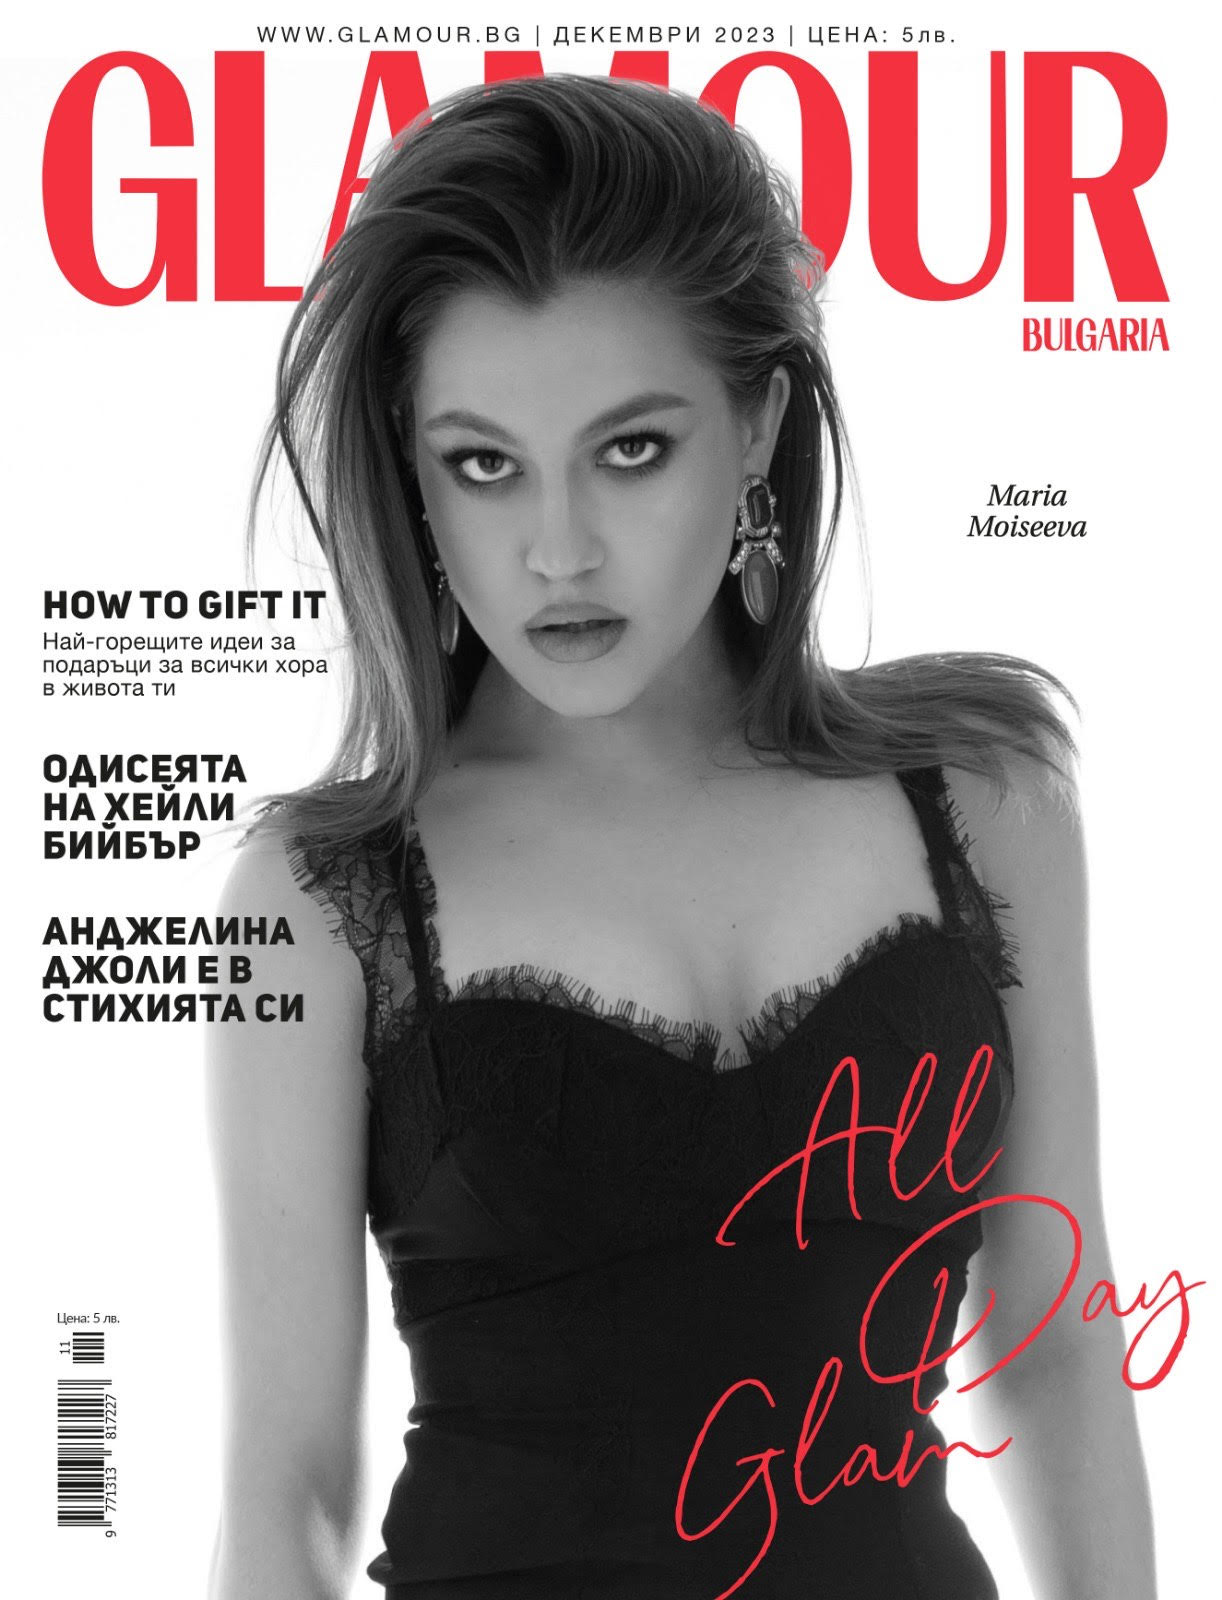 GLAMOUR magazine Bulgaria / Amelii robe